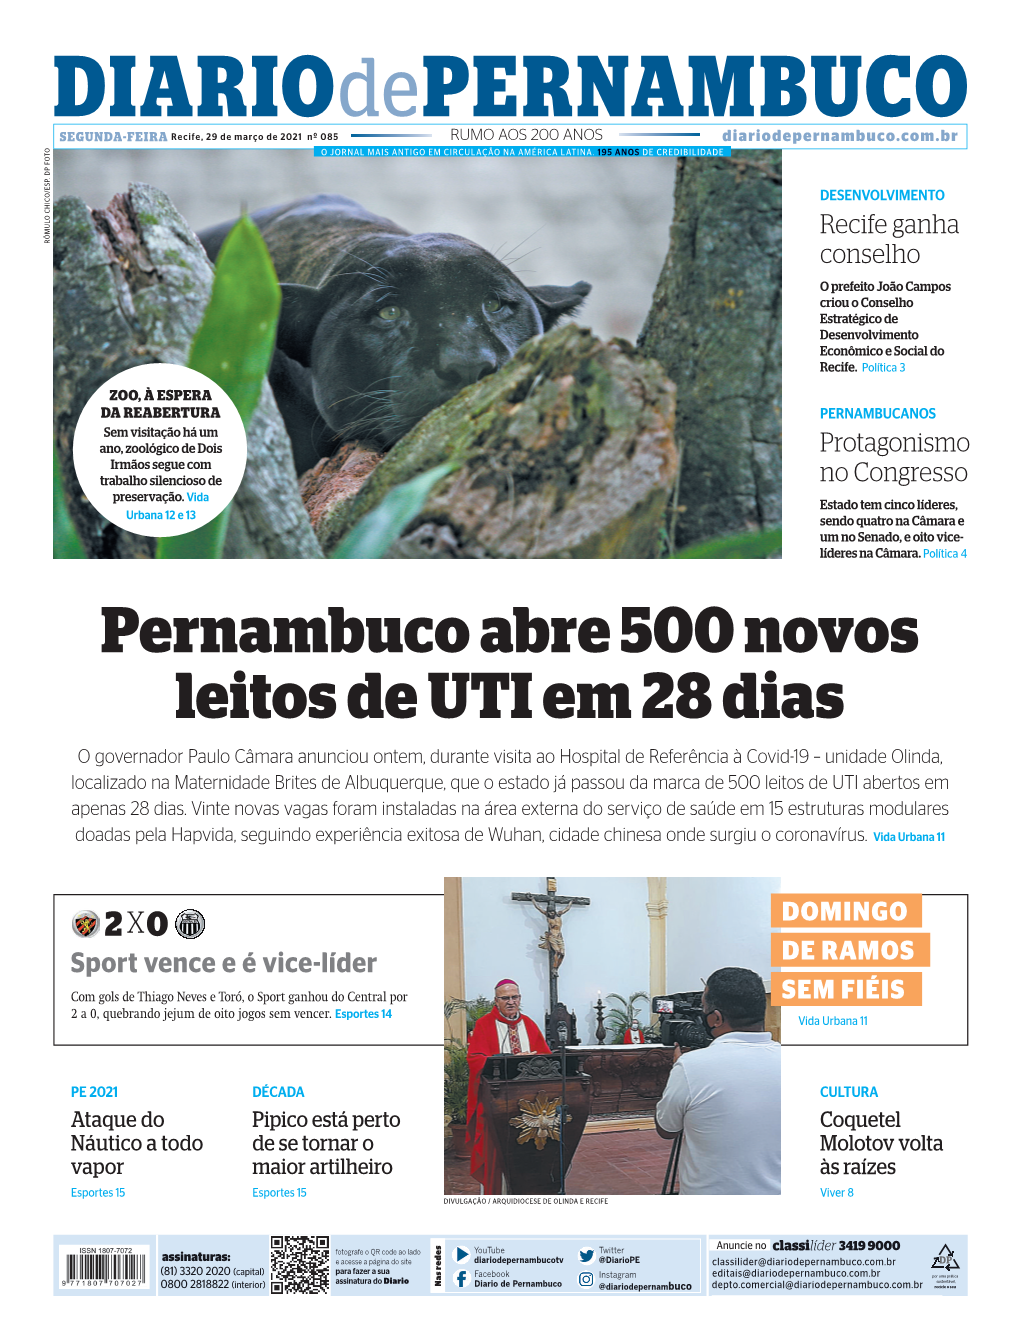 Pernambuco Abre 500 Novos Leitos De UTI Em 28 Dias